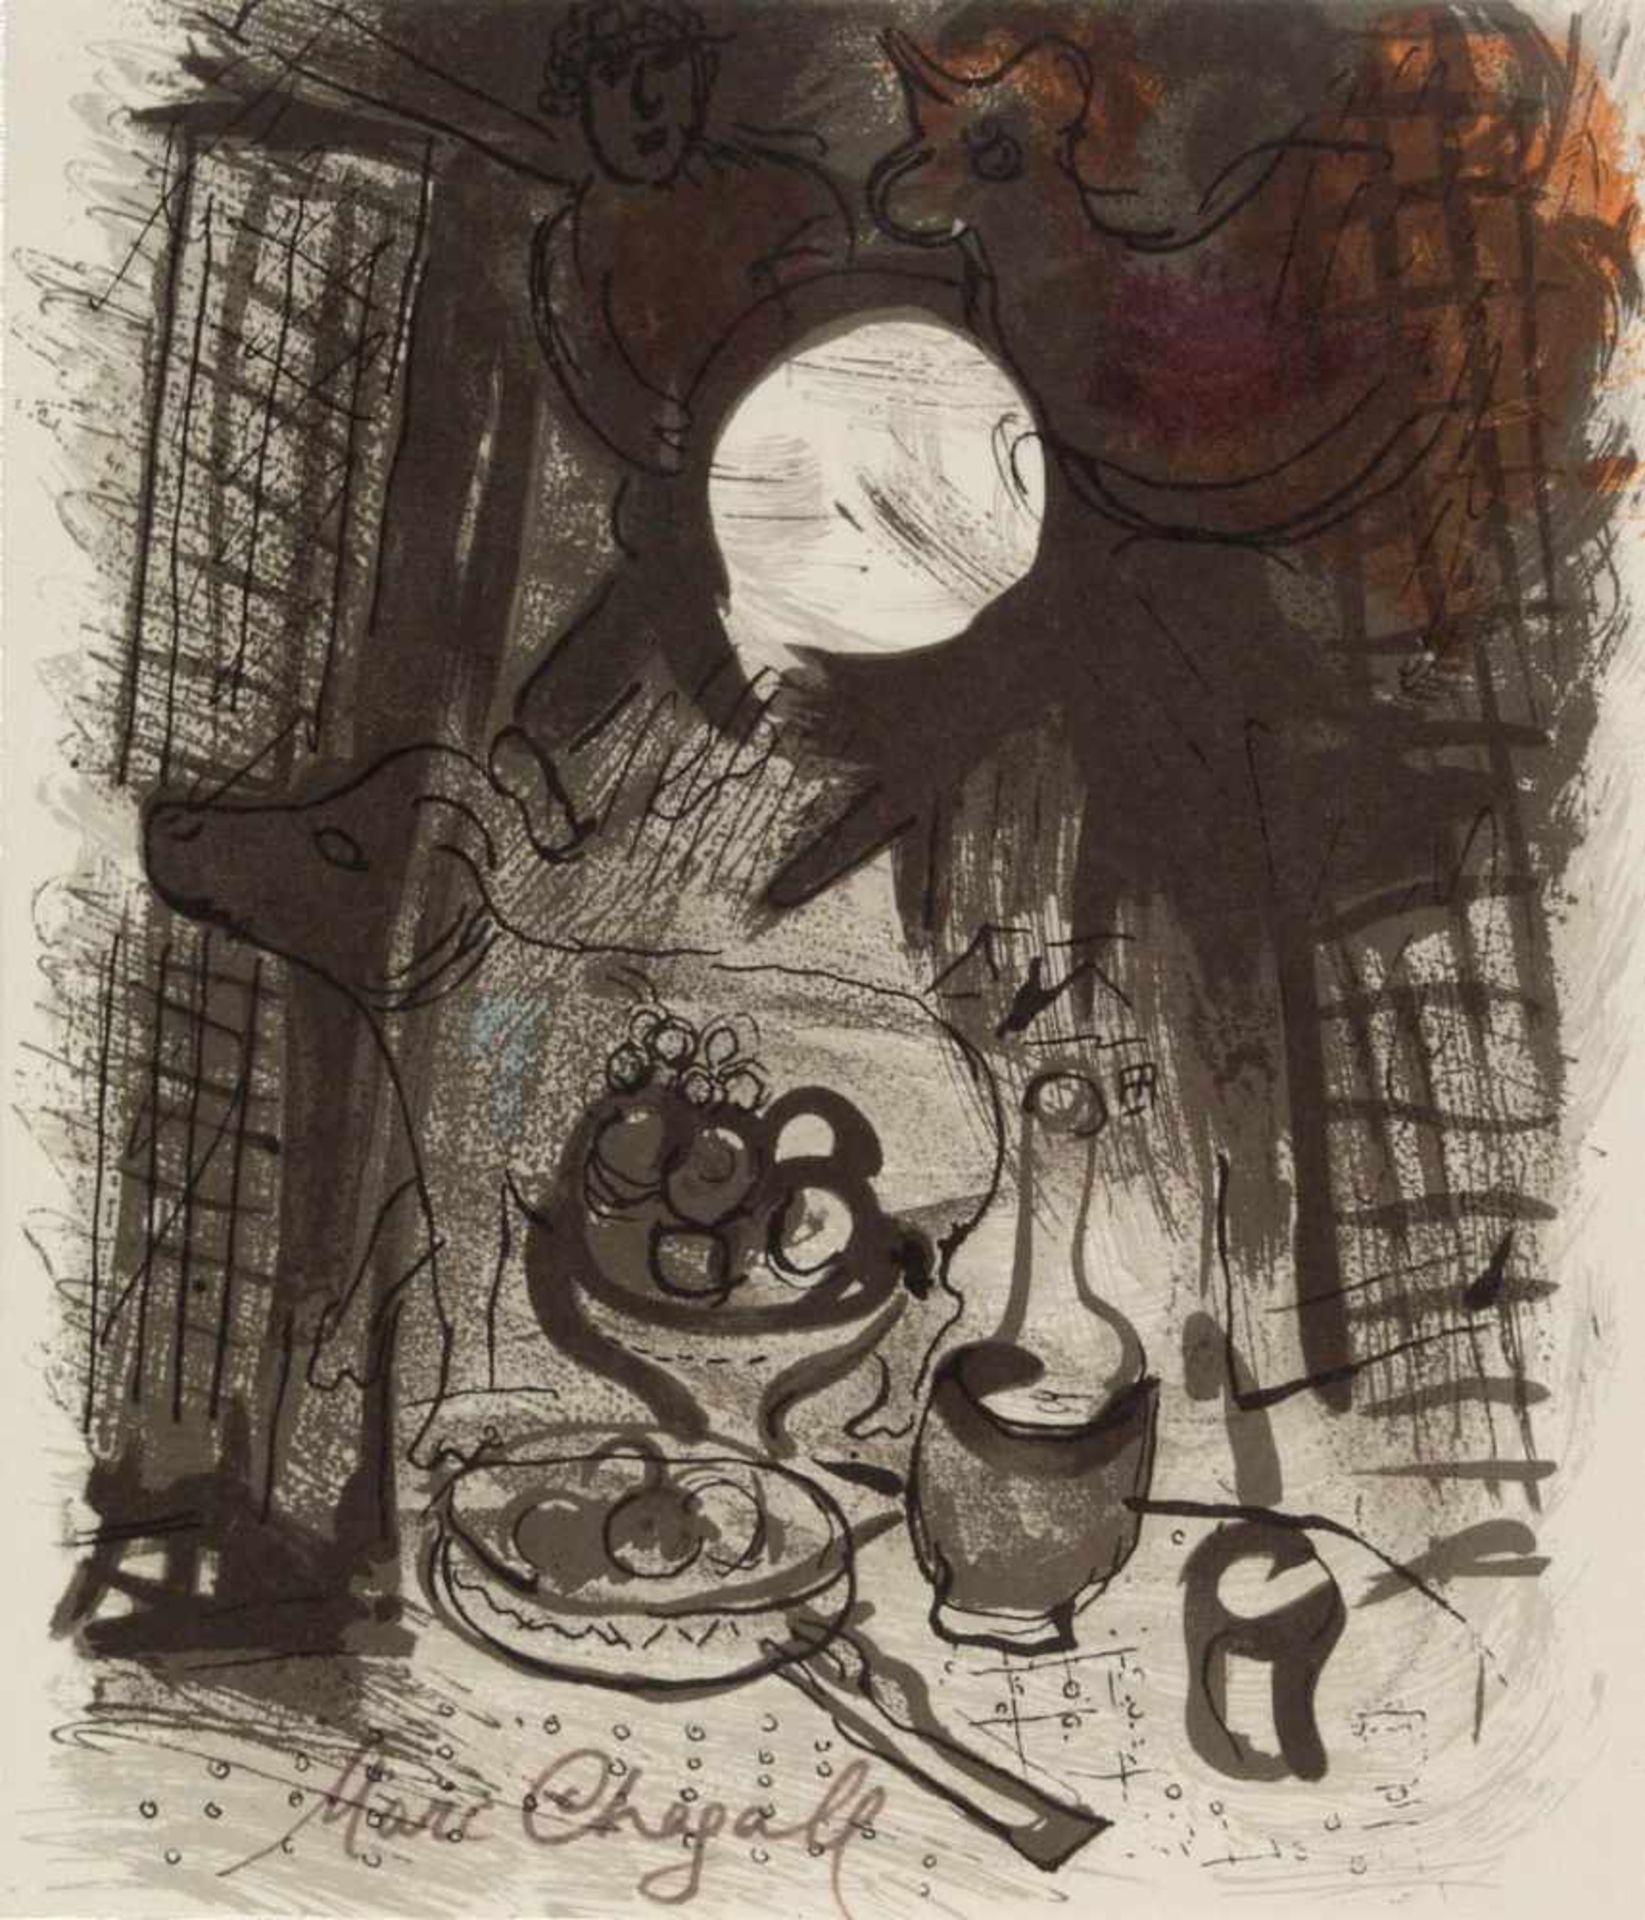 Marc Chagall (1887-1985)"Stillleben in Braun 1957", orig. Farblithographie, Mourlot 205, 23 x 19,5